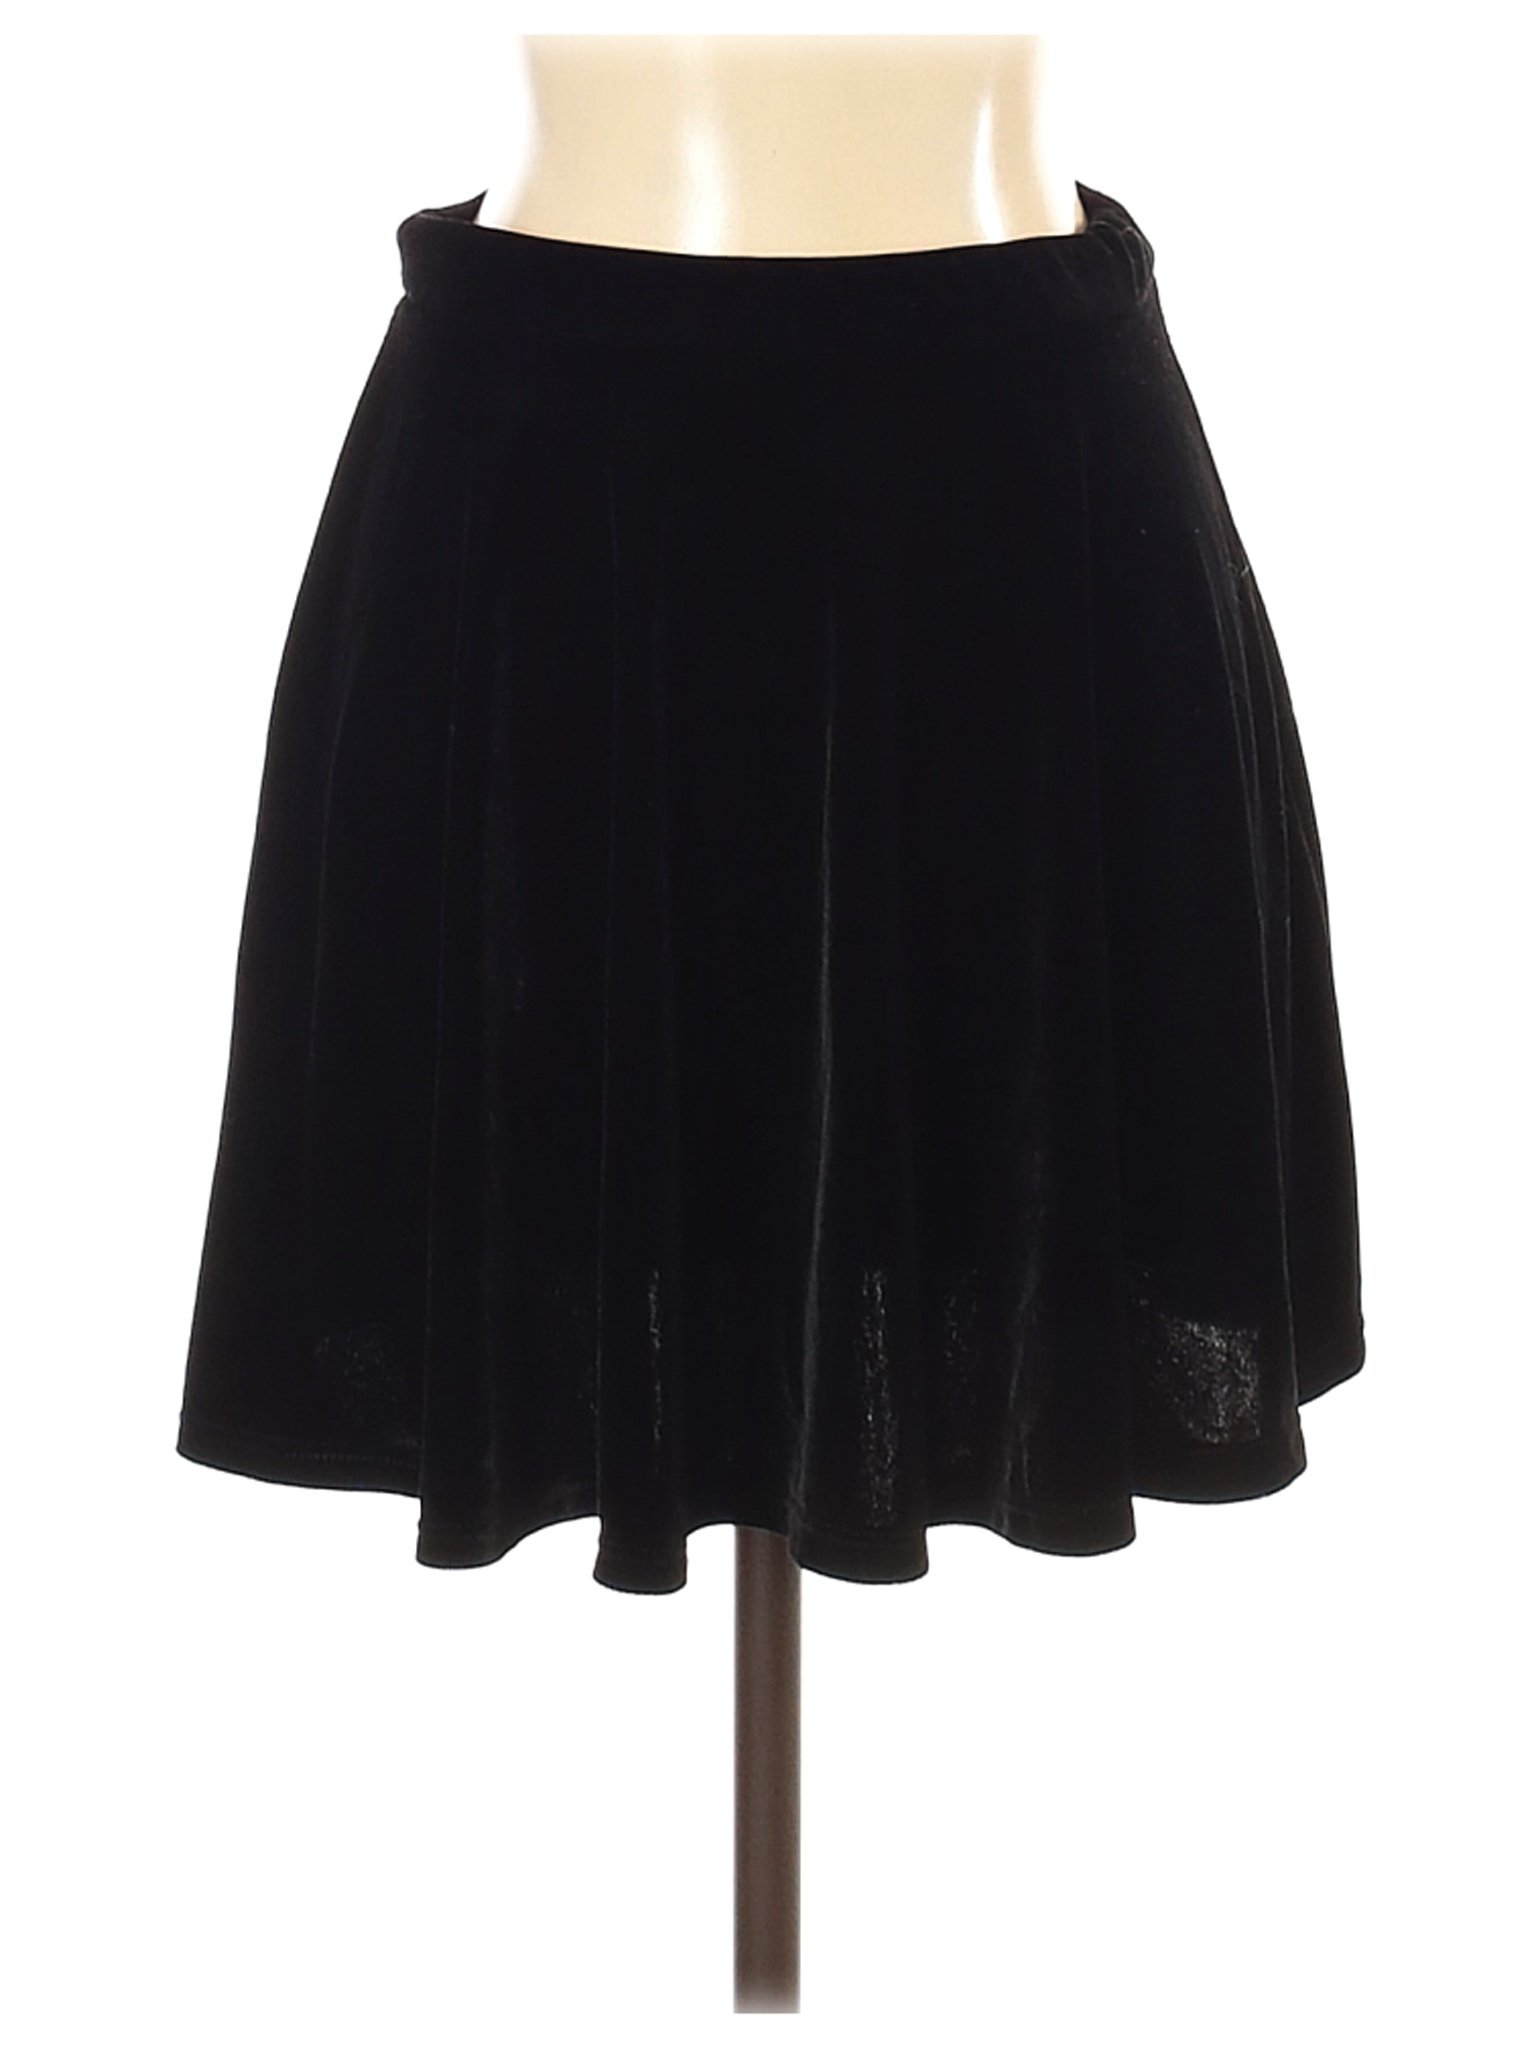 Rolla Coster Women Black Formal Skirt S | eBay